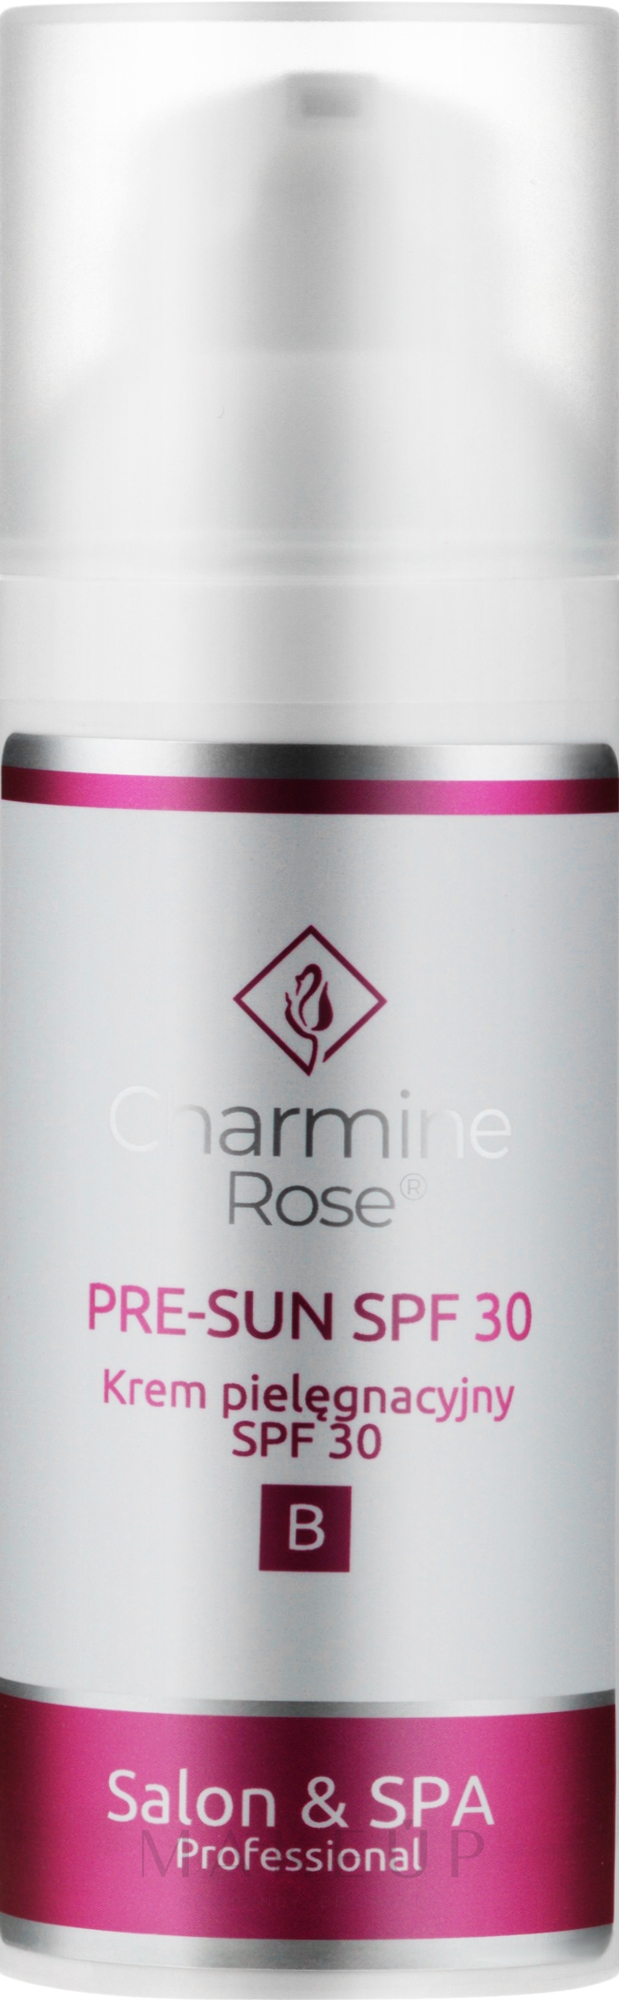 Feuchtigkeitsspendende und sonnenschutzende Tagescreme nach medizinischen Eingriffen - Charmine Rose Pre-Sun SPF 30 — Bild 50 ml